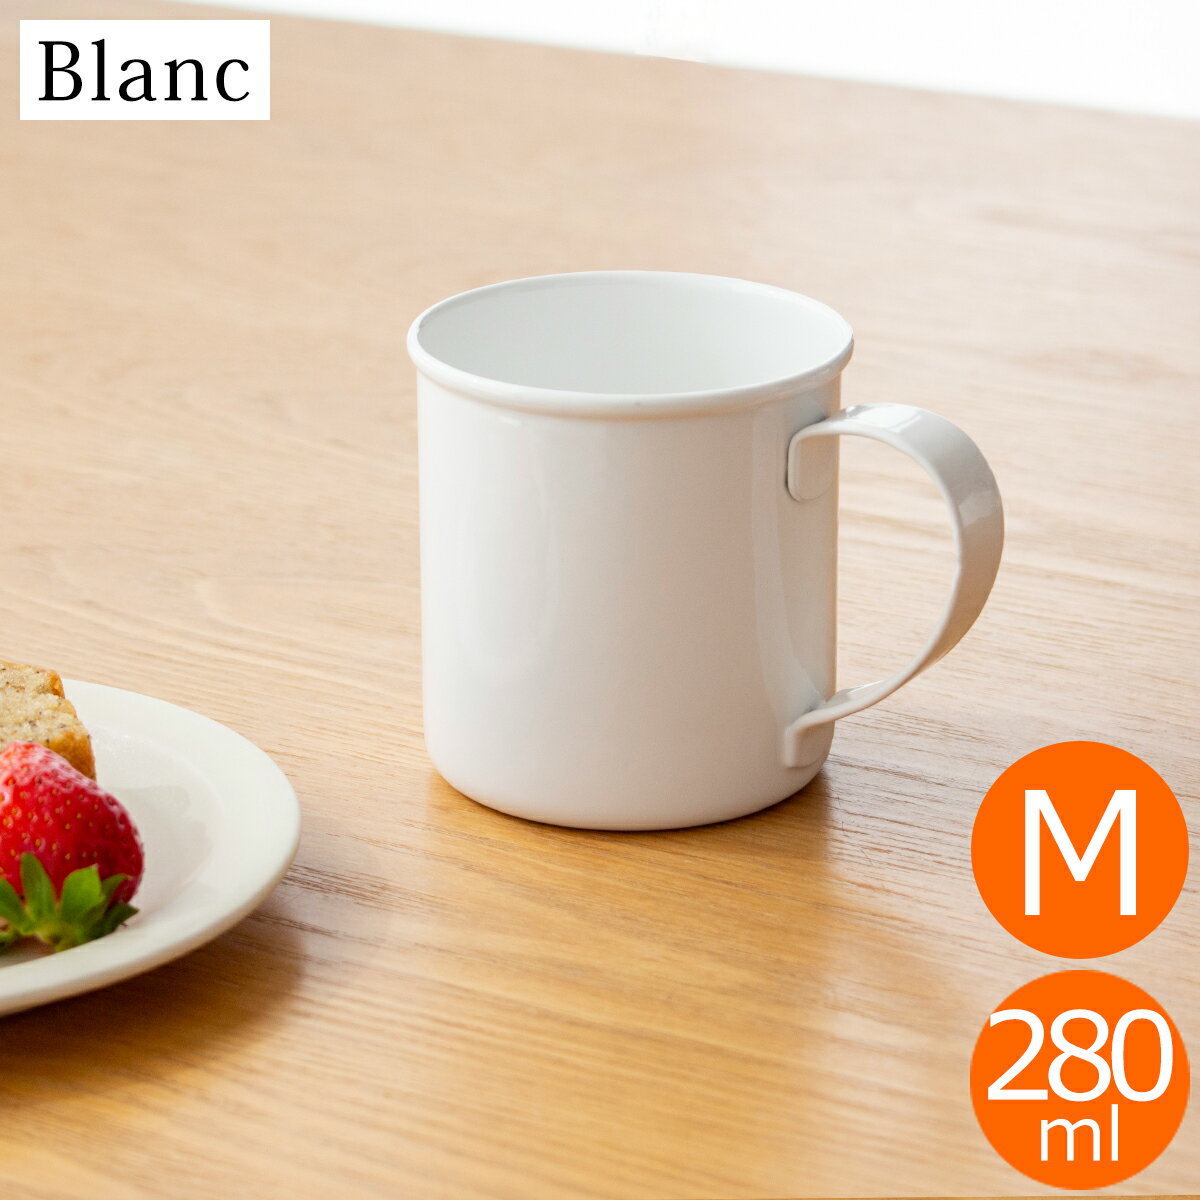 マグカップ M 280ml 琺瑯 ホーロー Blanc ブラン takakuwa 高桑金属 手作り 職人 白 ホワイト コップ 食器 日本製